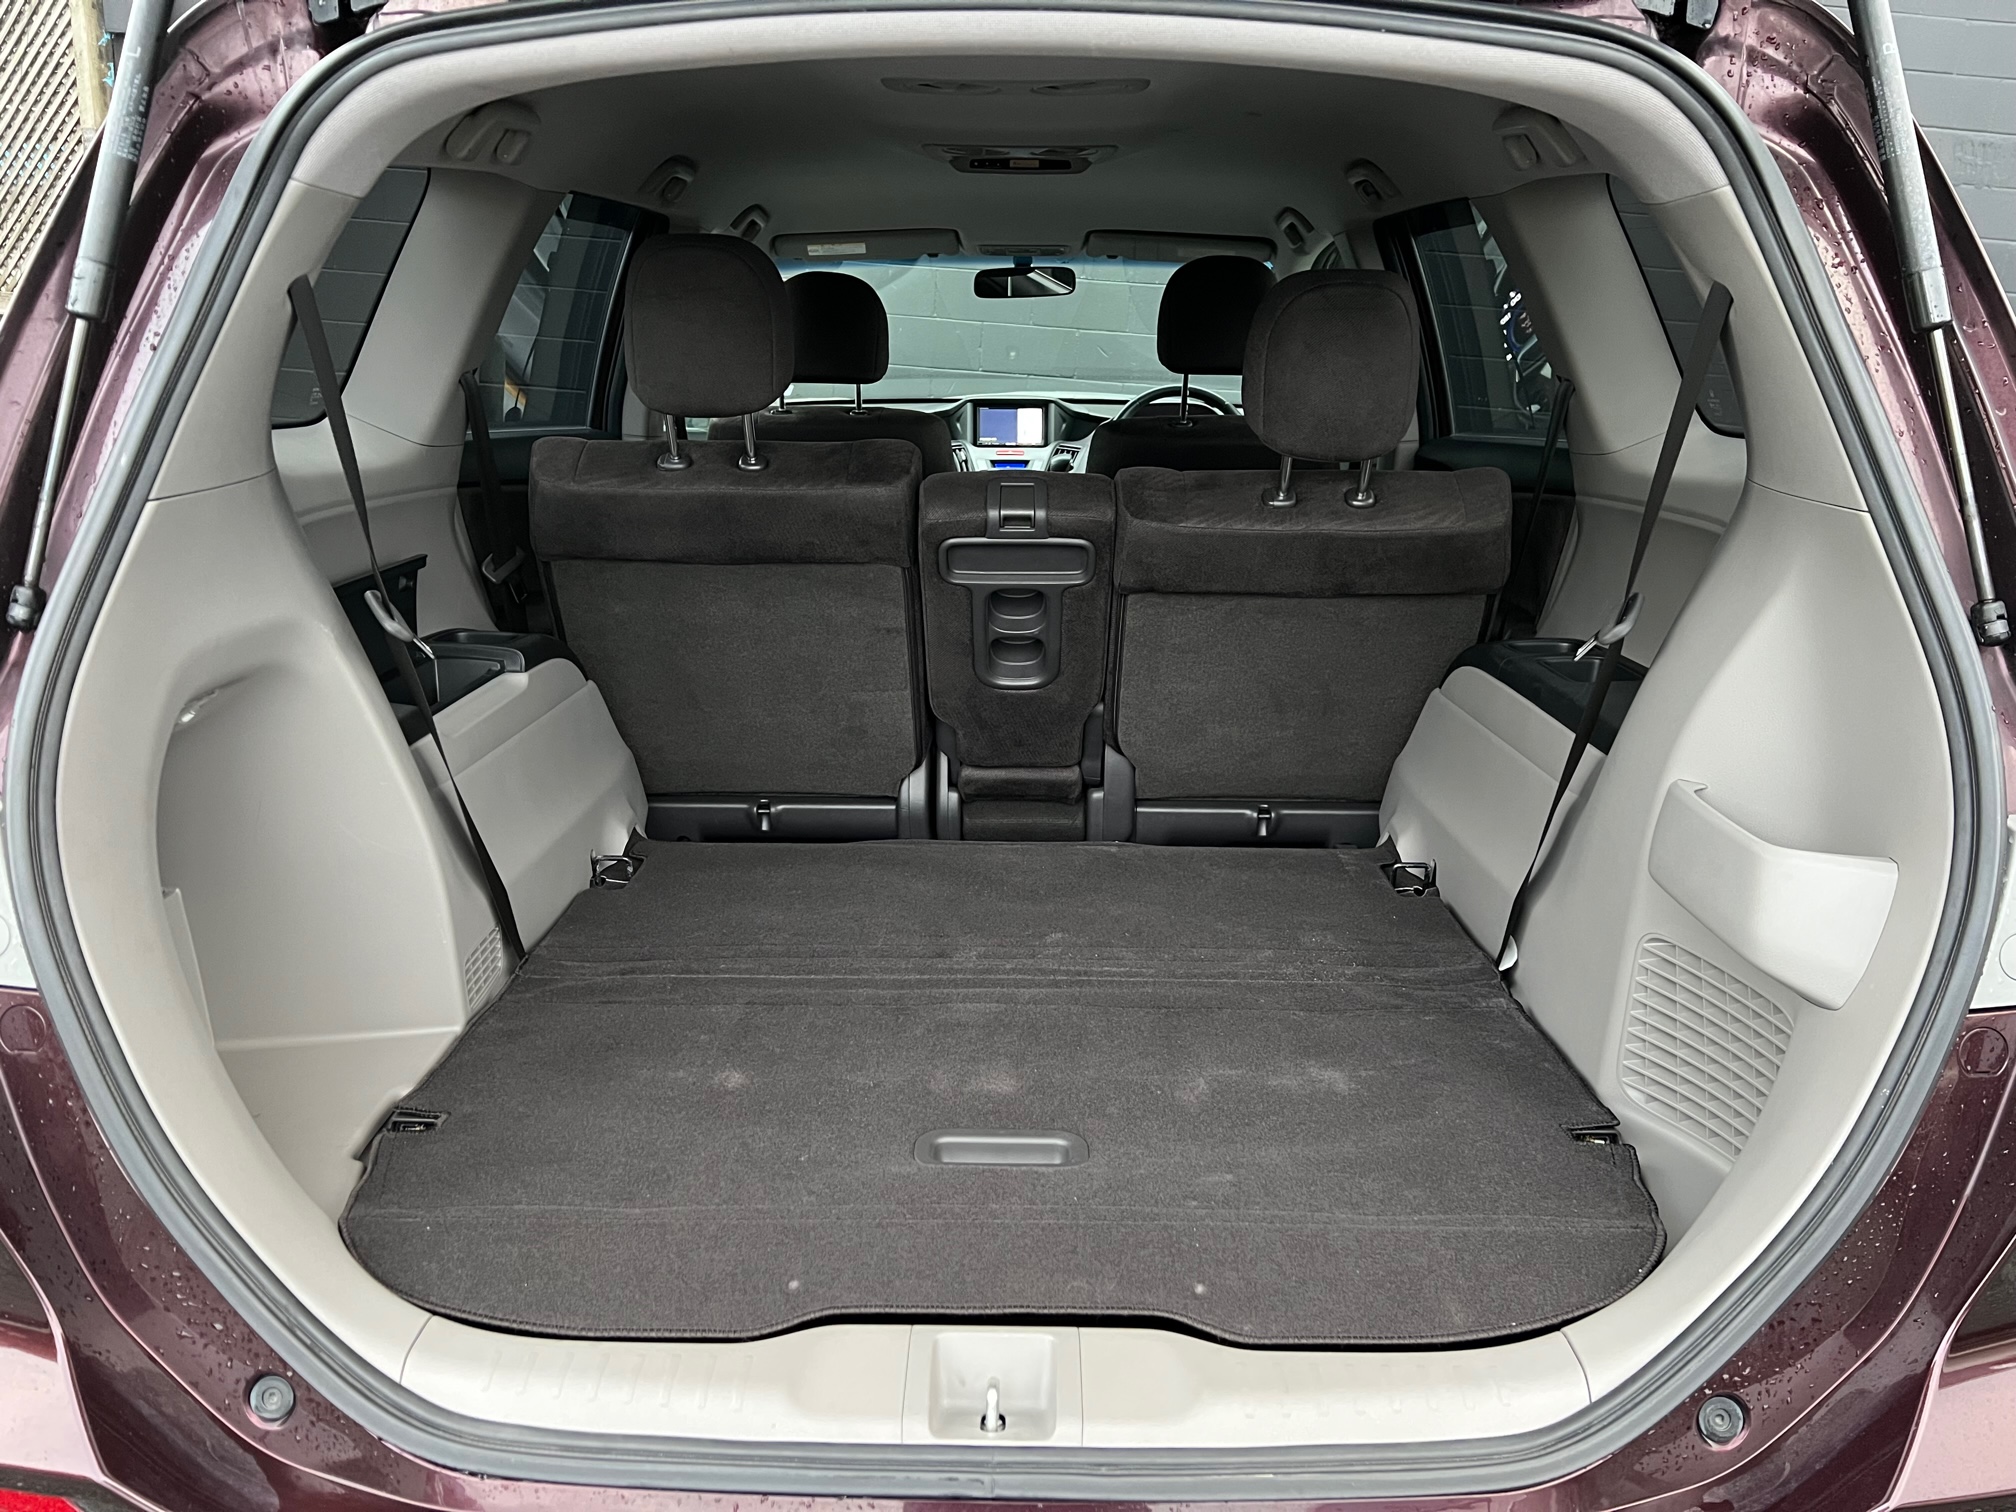 Honda Odyssey 2009 Image 8